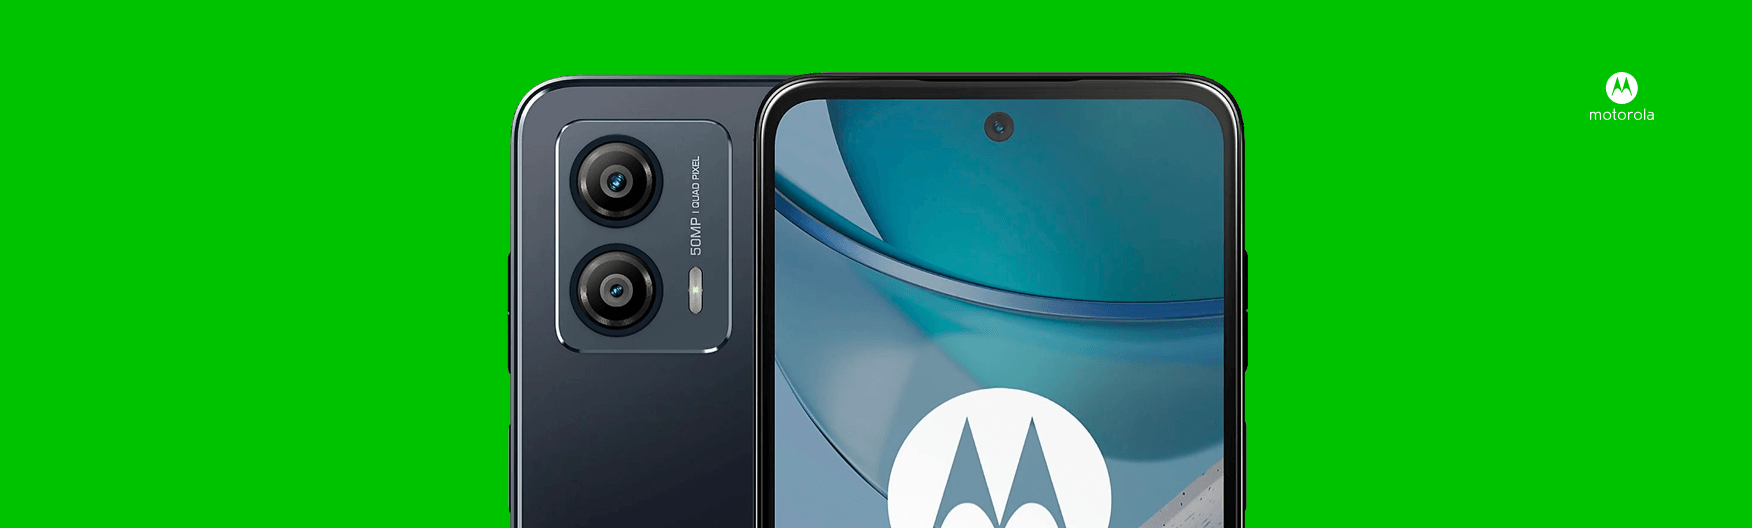 De voor- en achterkant van een Motorola telefoon